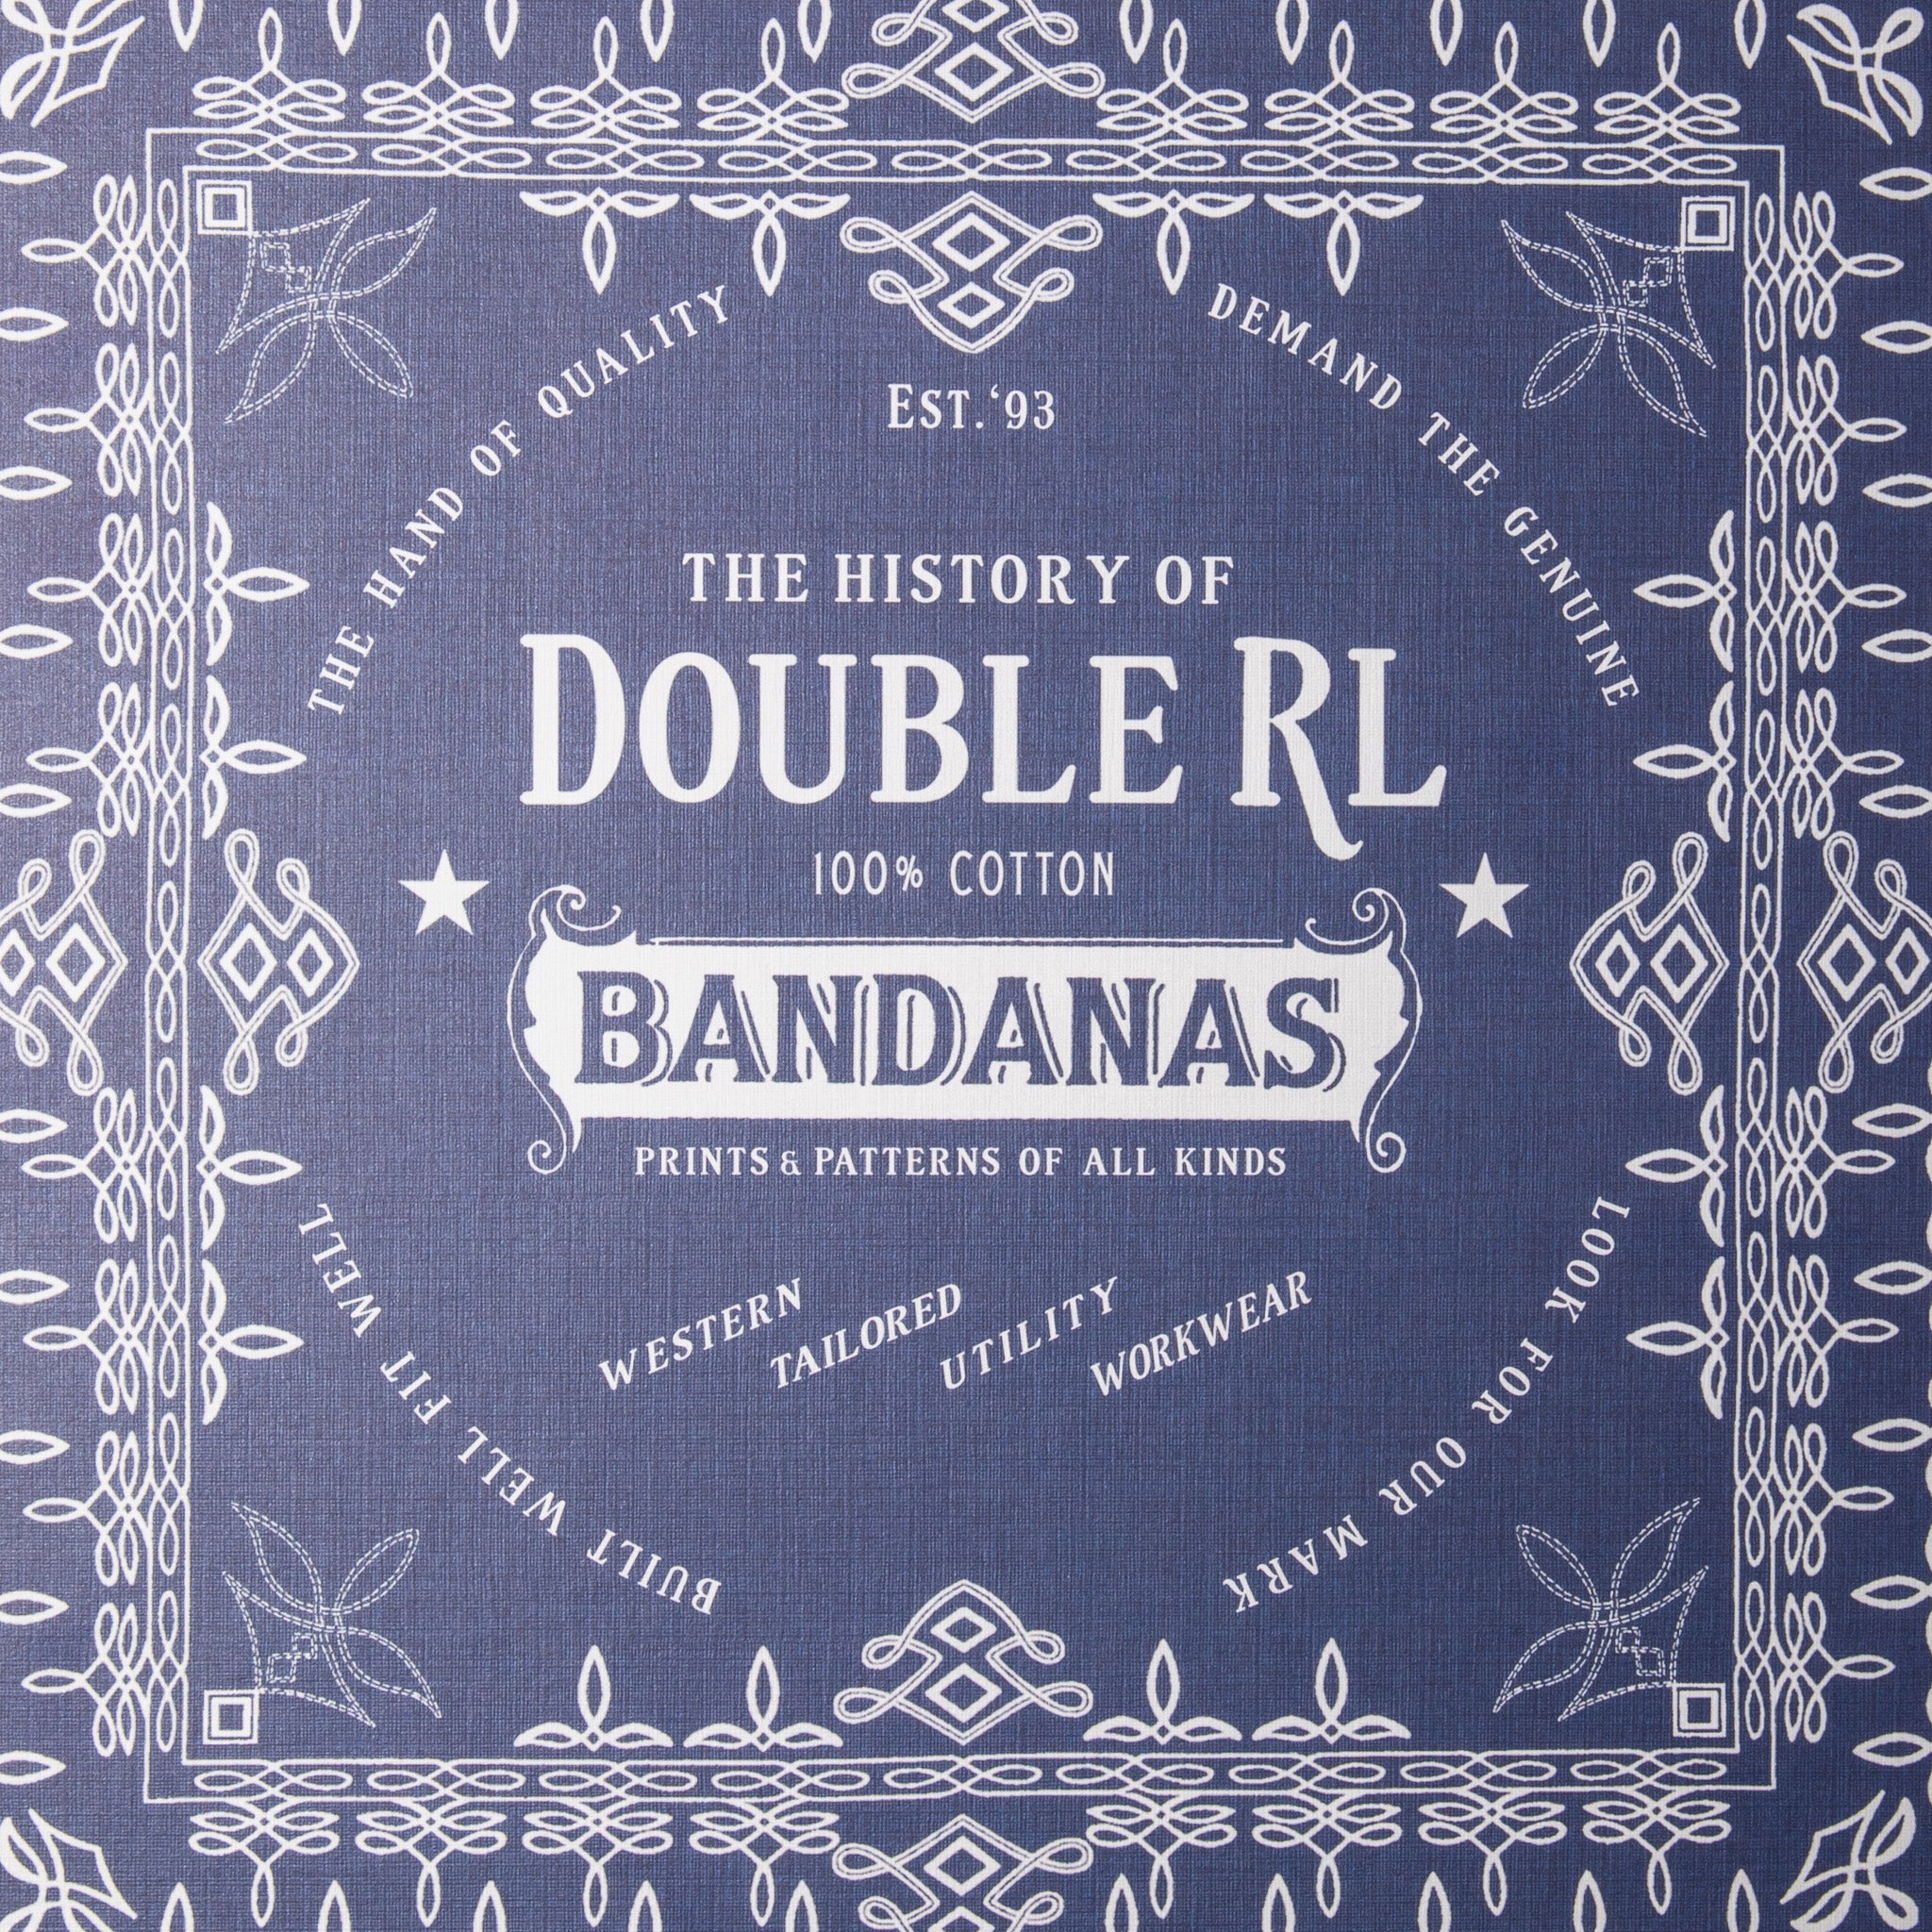 The History of Double RL Bandana&#39;s